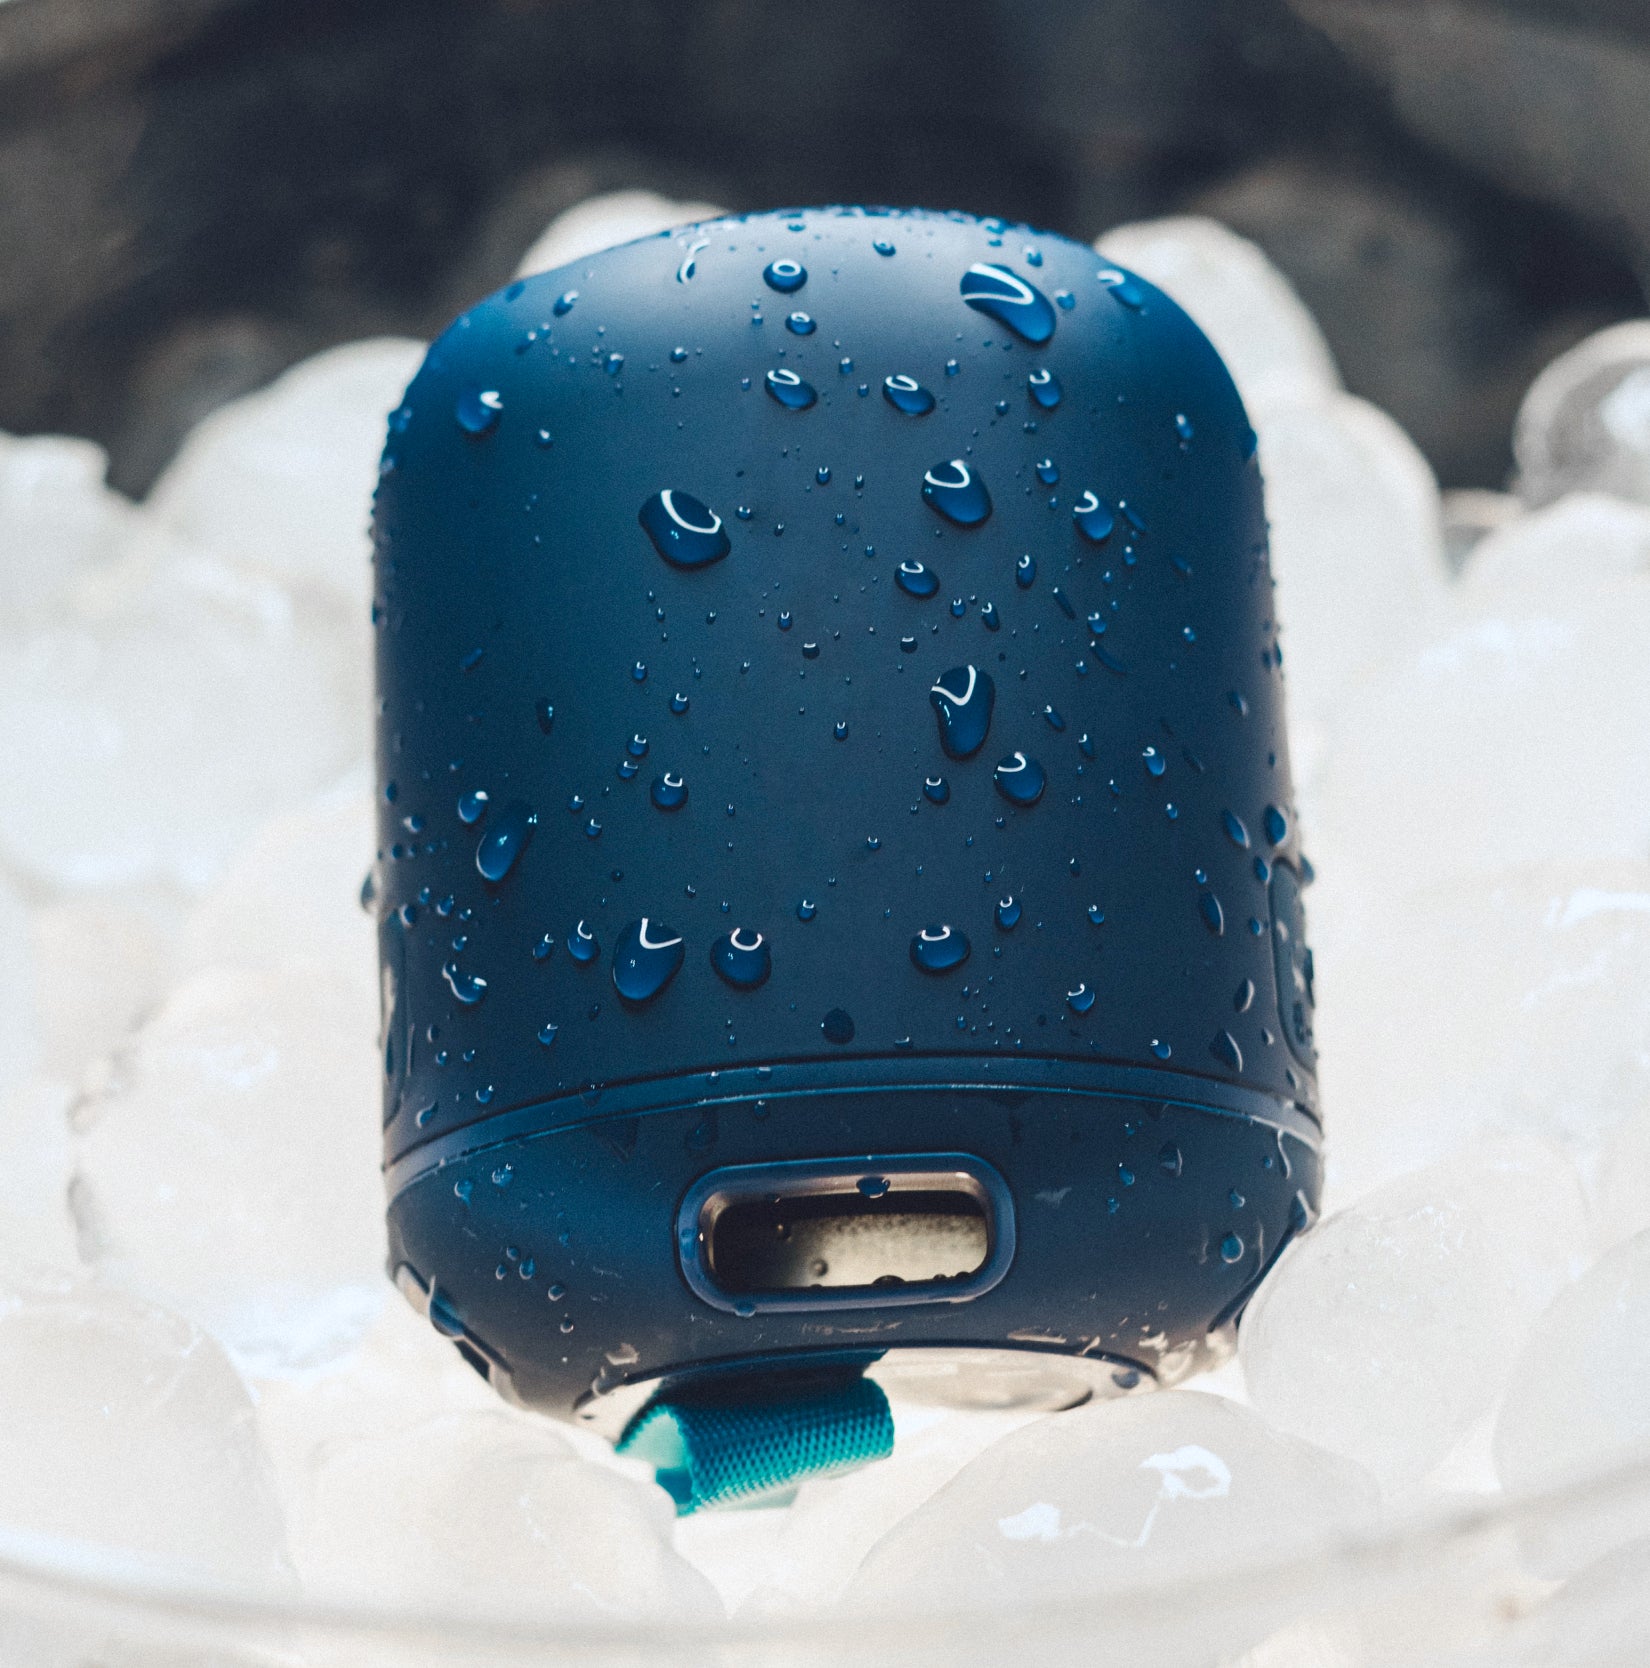 A blue wireless speaker in an ice bucket